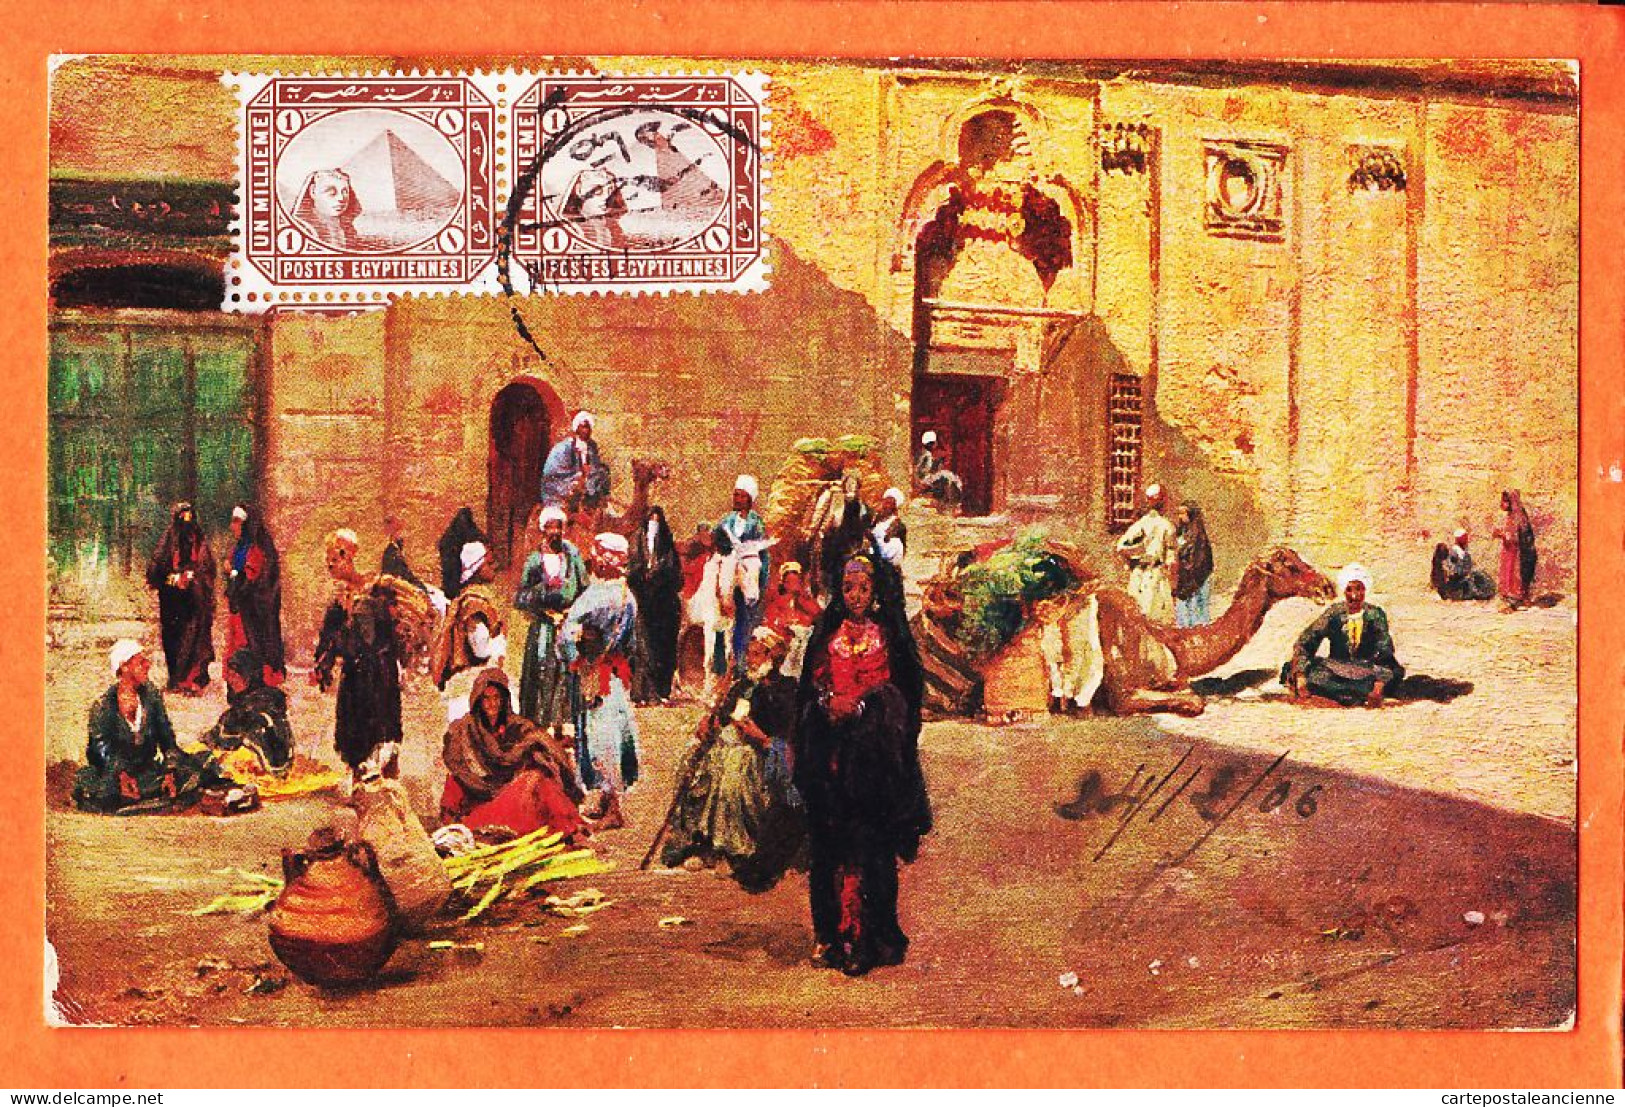 09954 / ⭐ LE CAIRE Egypte ◉ Scène De Rue Types People CAIRO KAIRO 1906 à PENTECOUTEAU Paris ◉ Il. WUTTKE ? ◉ Litho R-128 - Cairo